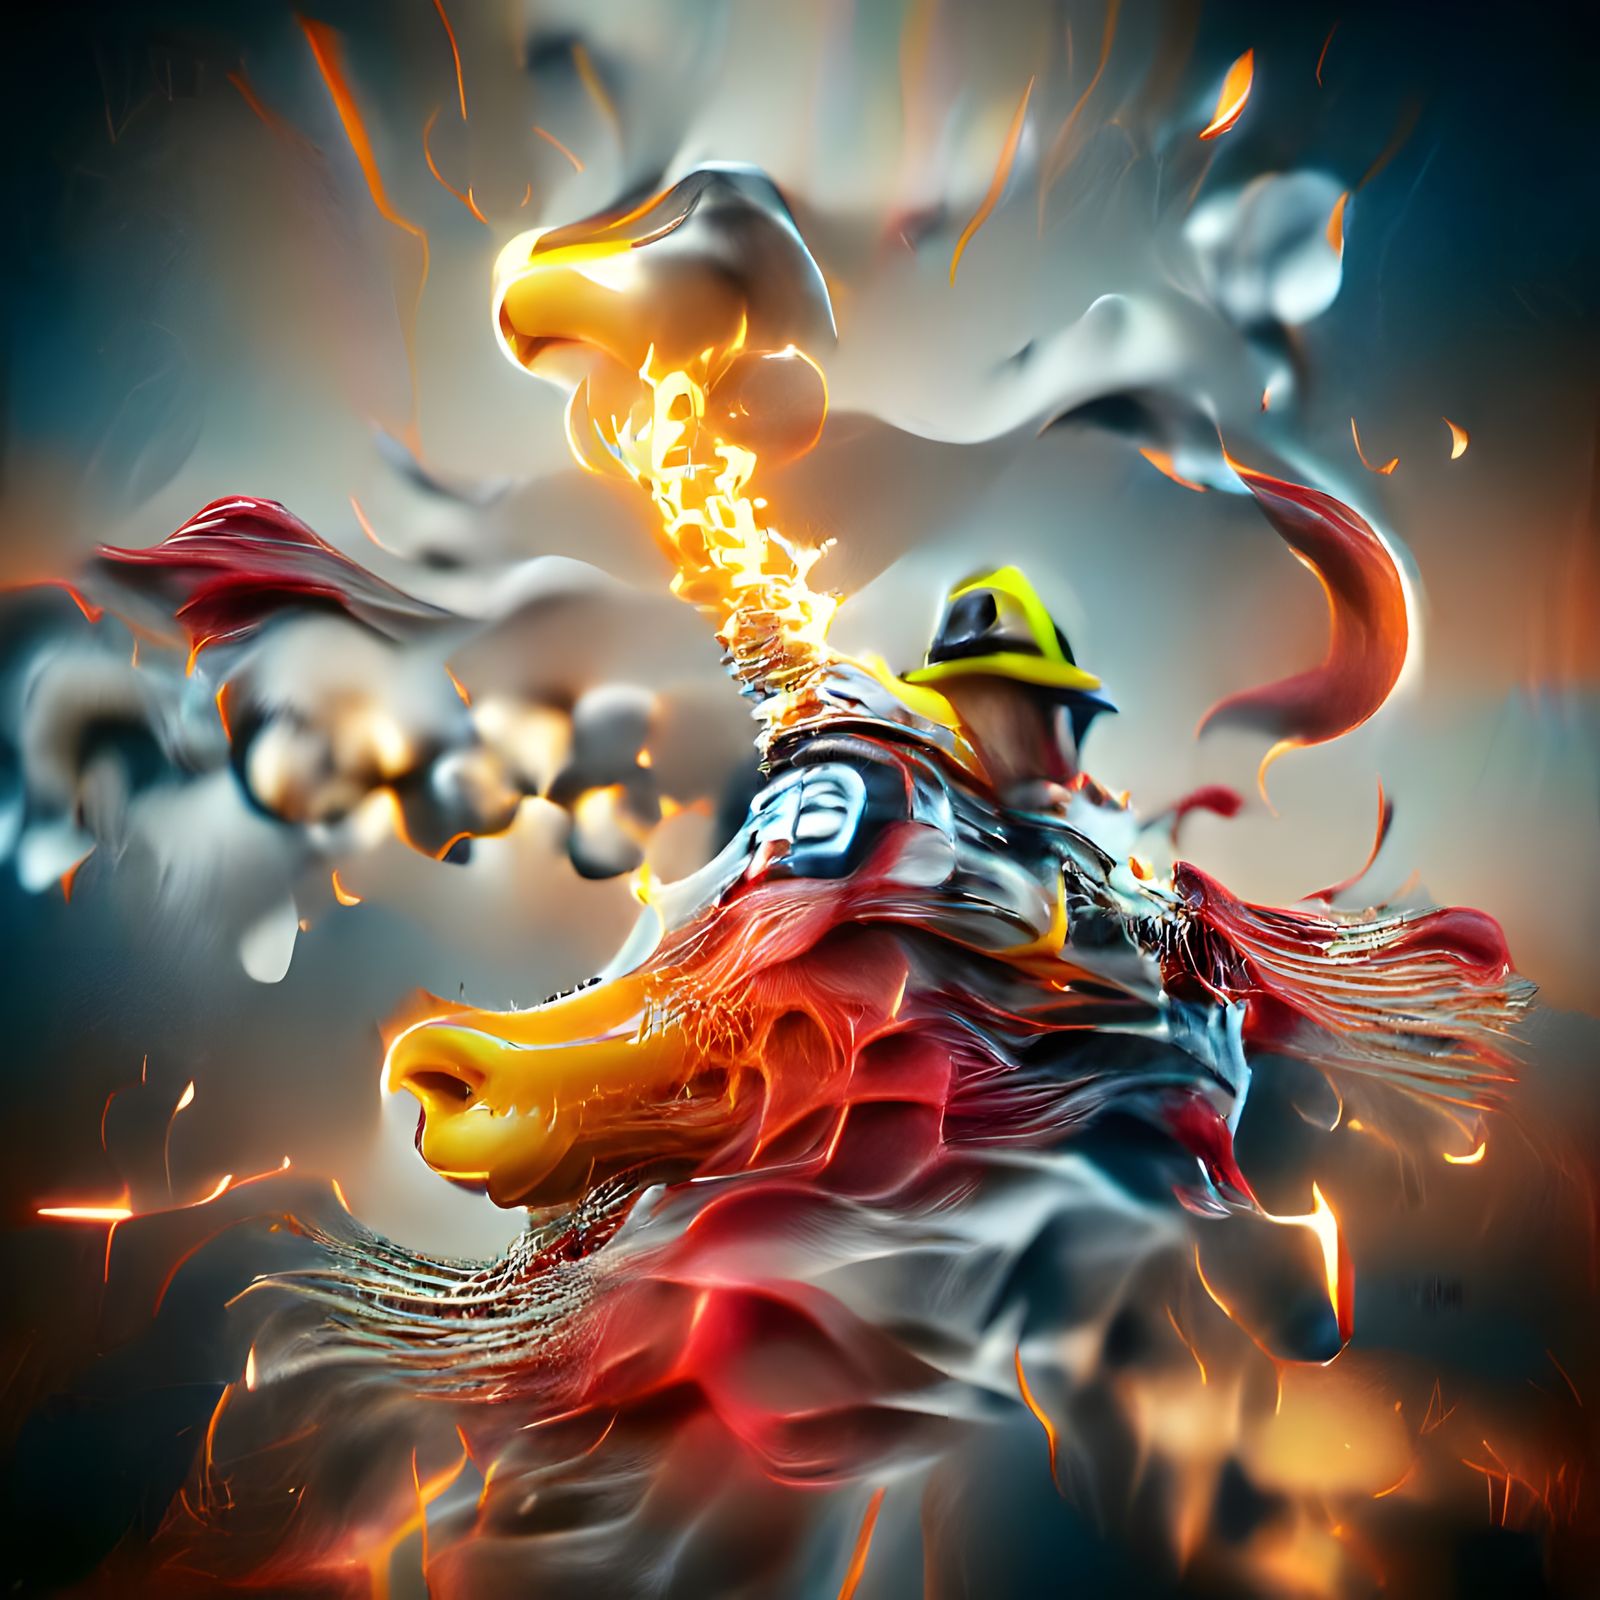 Fire Breathing fireman.